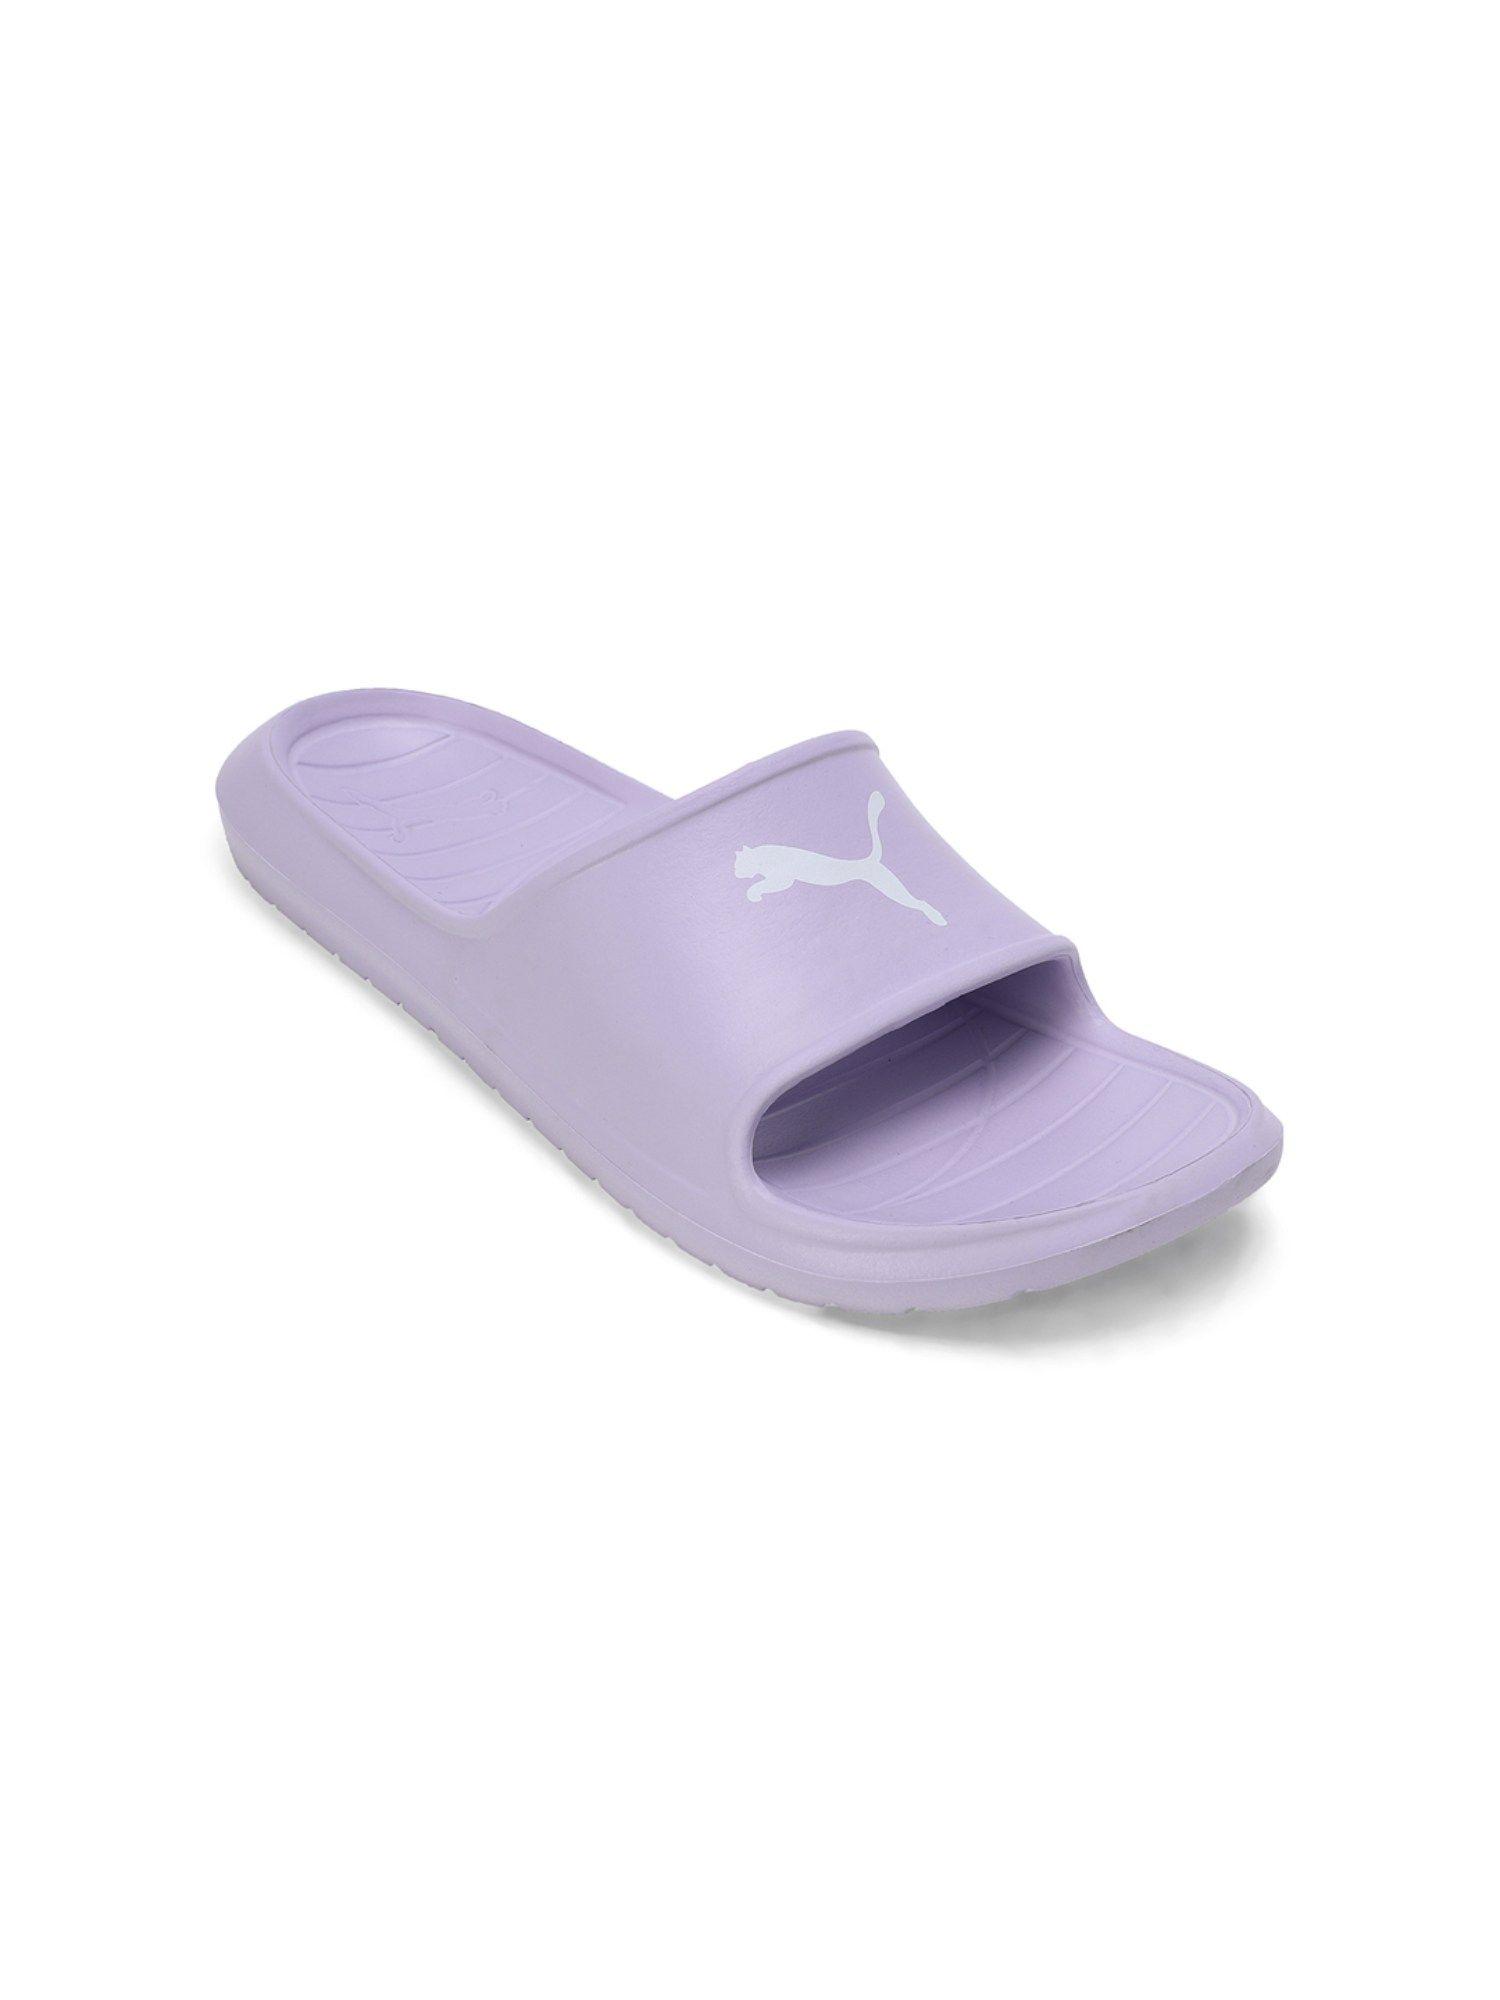 divecat v2 lite cat unisex purple slides